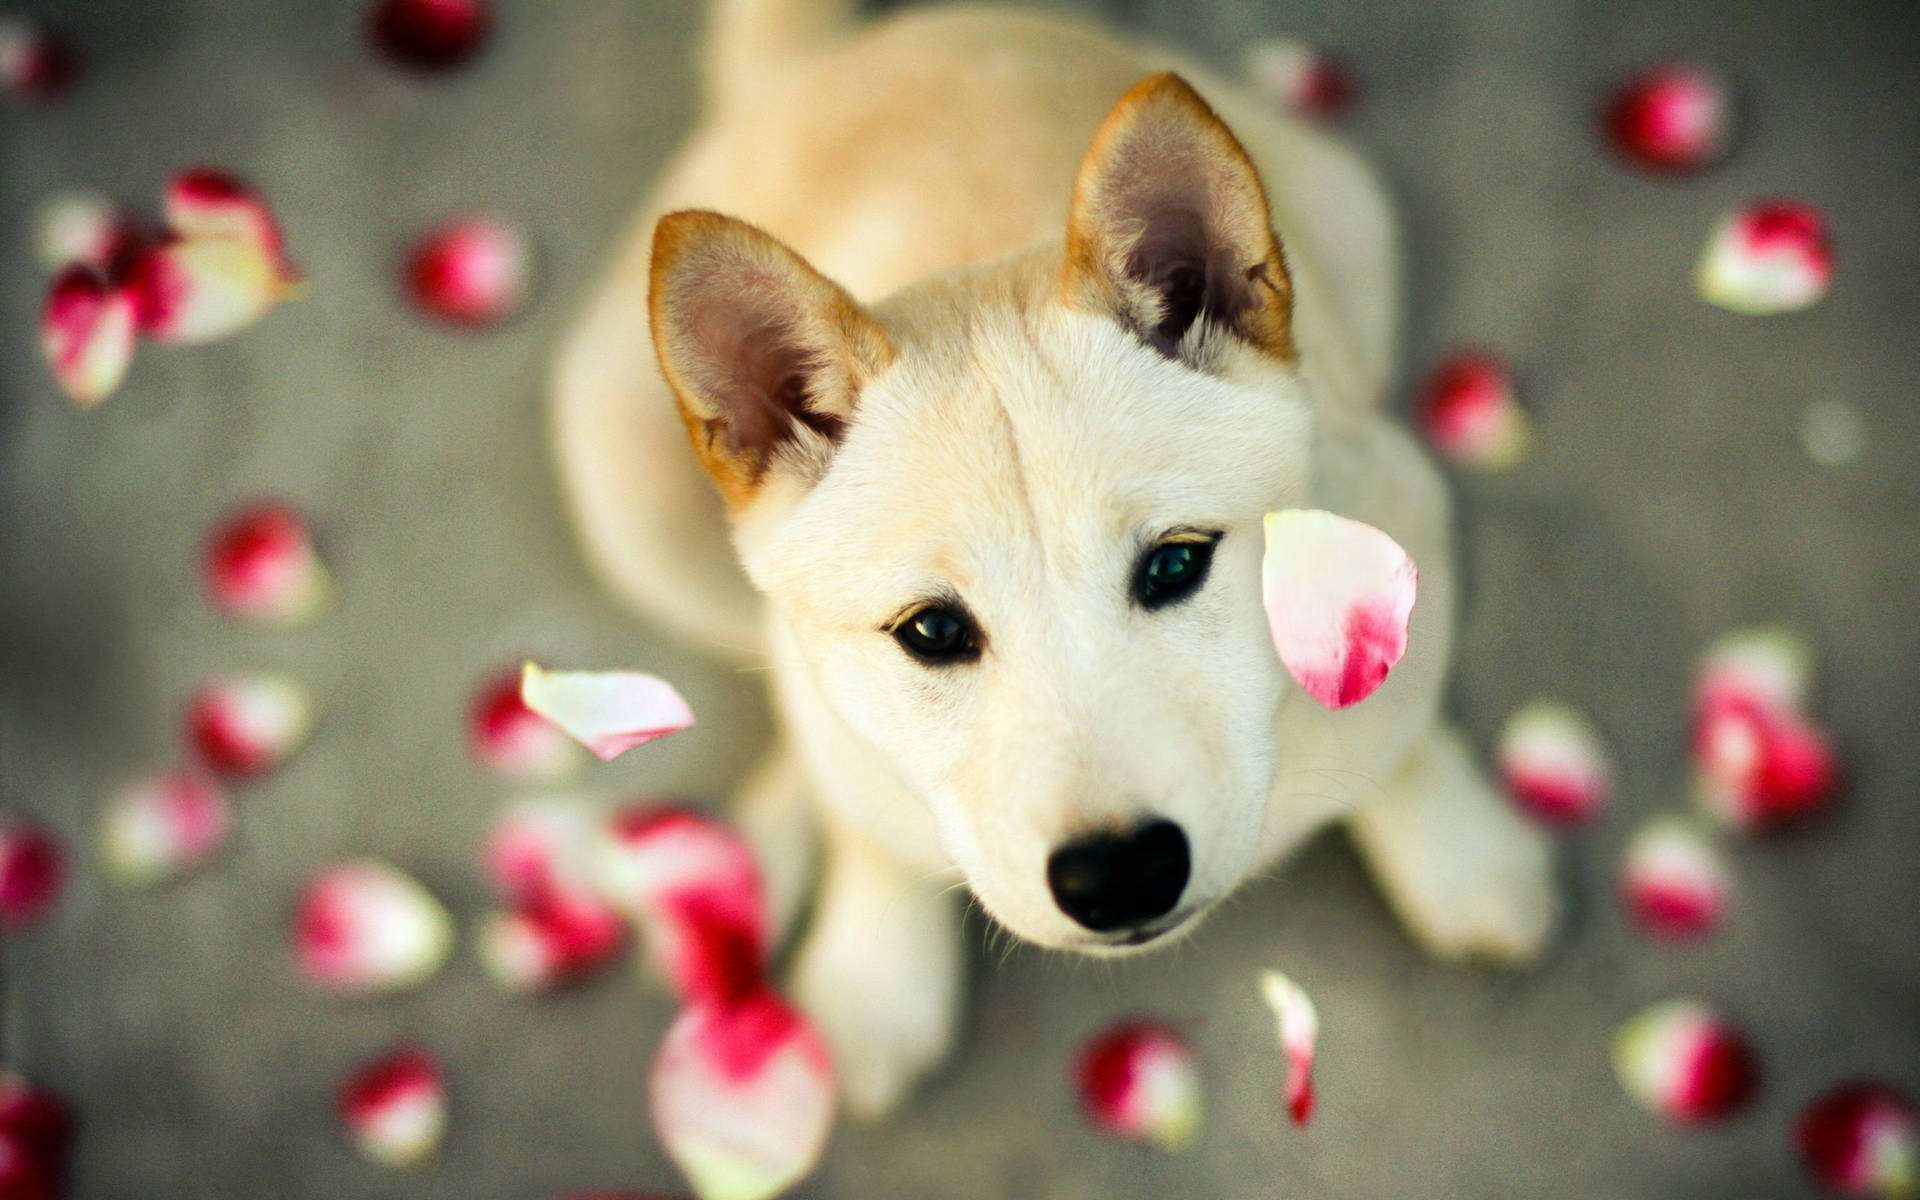 Cute dog under pink flower petals shower wallpaper